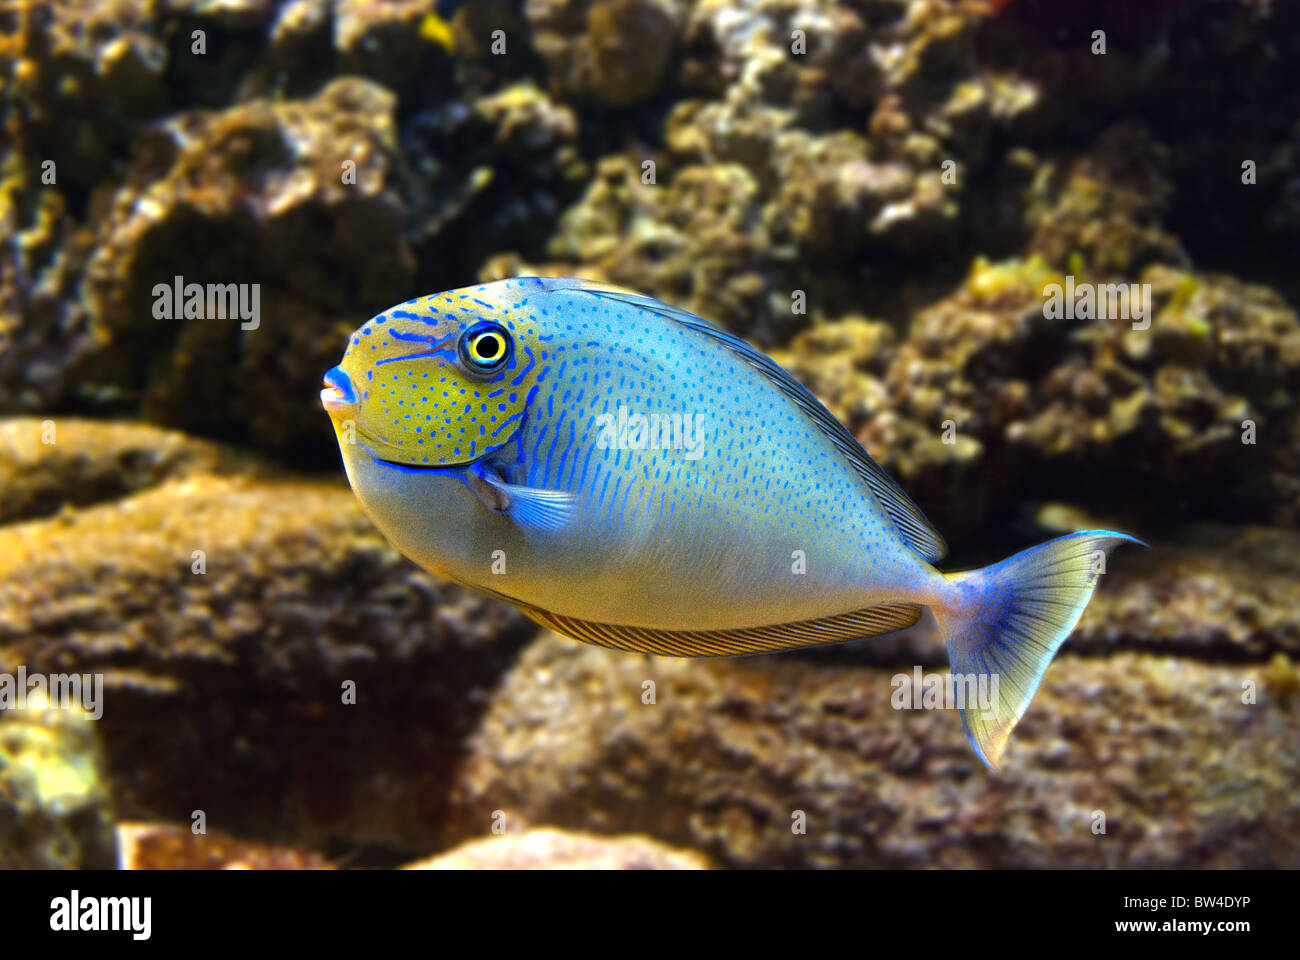 Blue fish in aquarium Stock Photo